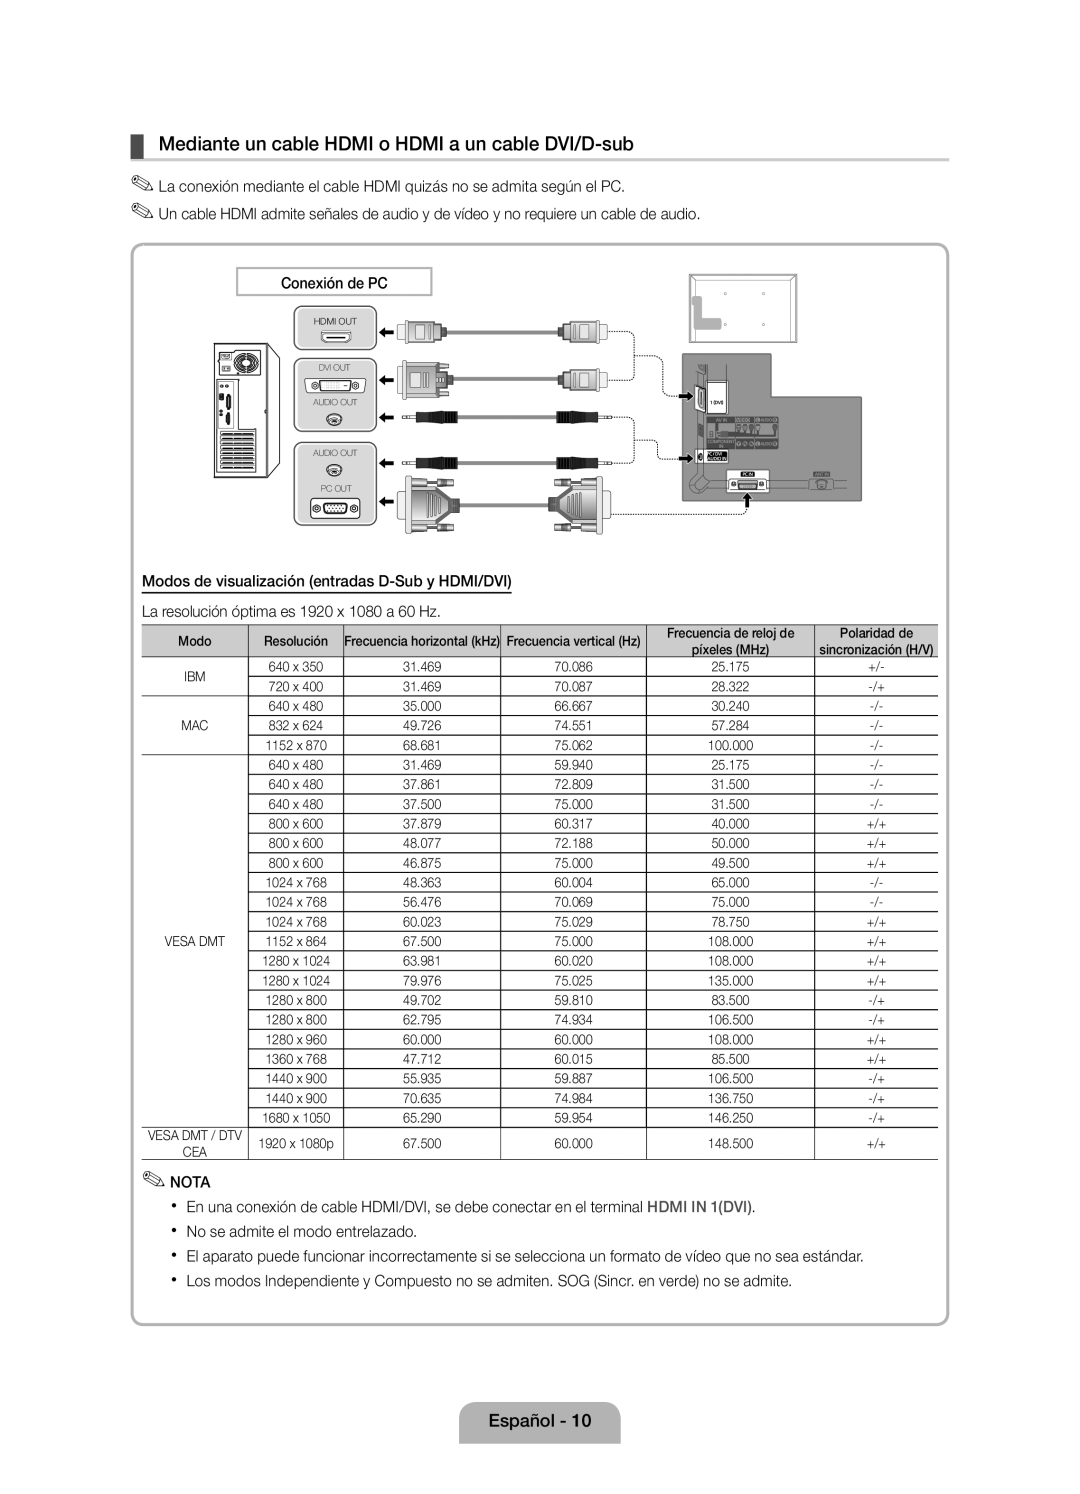 Samsung UE46D5000PWXXC, UE46D5000PWXZG manual Mediante un cable HDMI o HDMI a un cable DVI/D-sub, Conexión de PC, Nota 